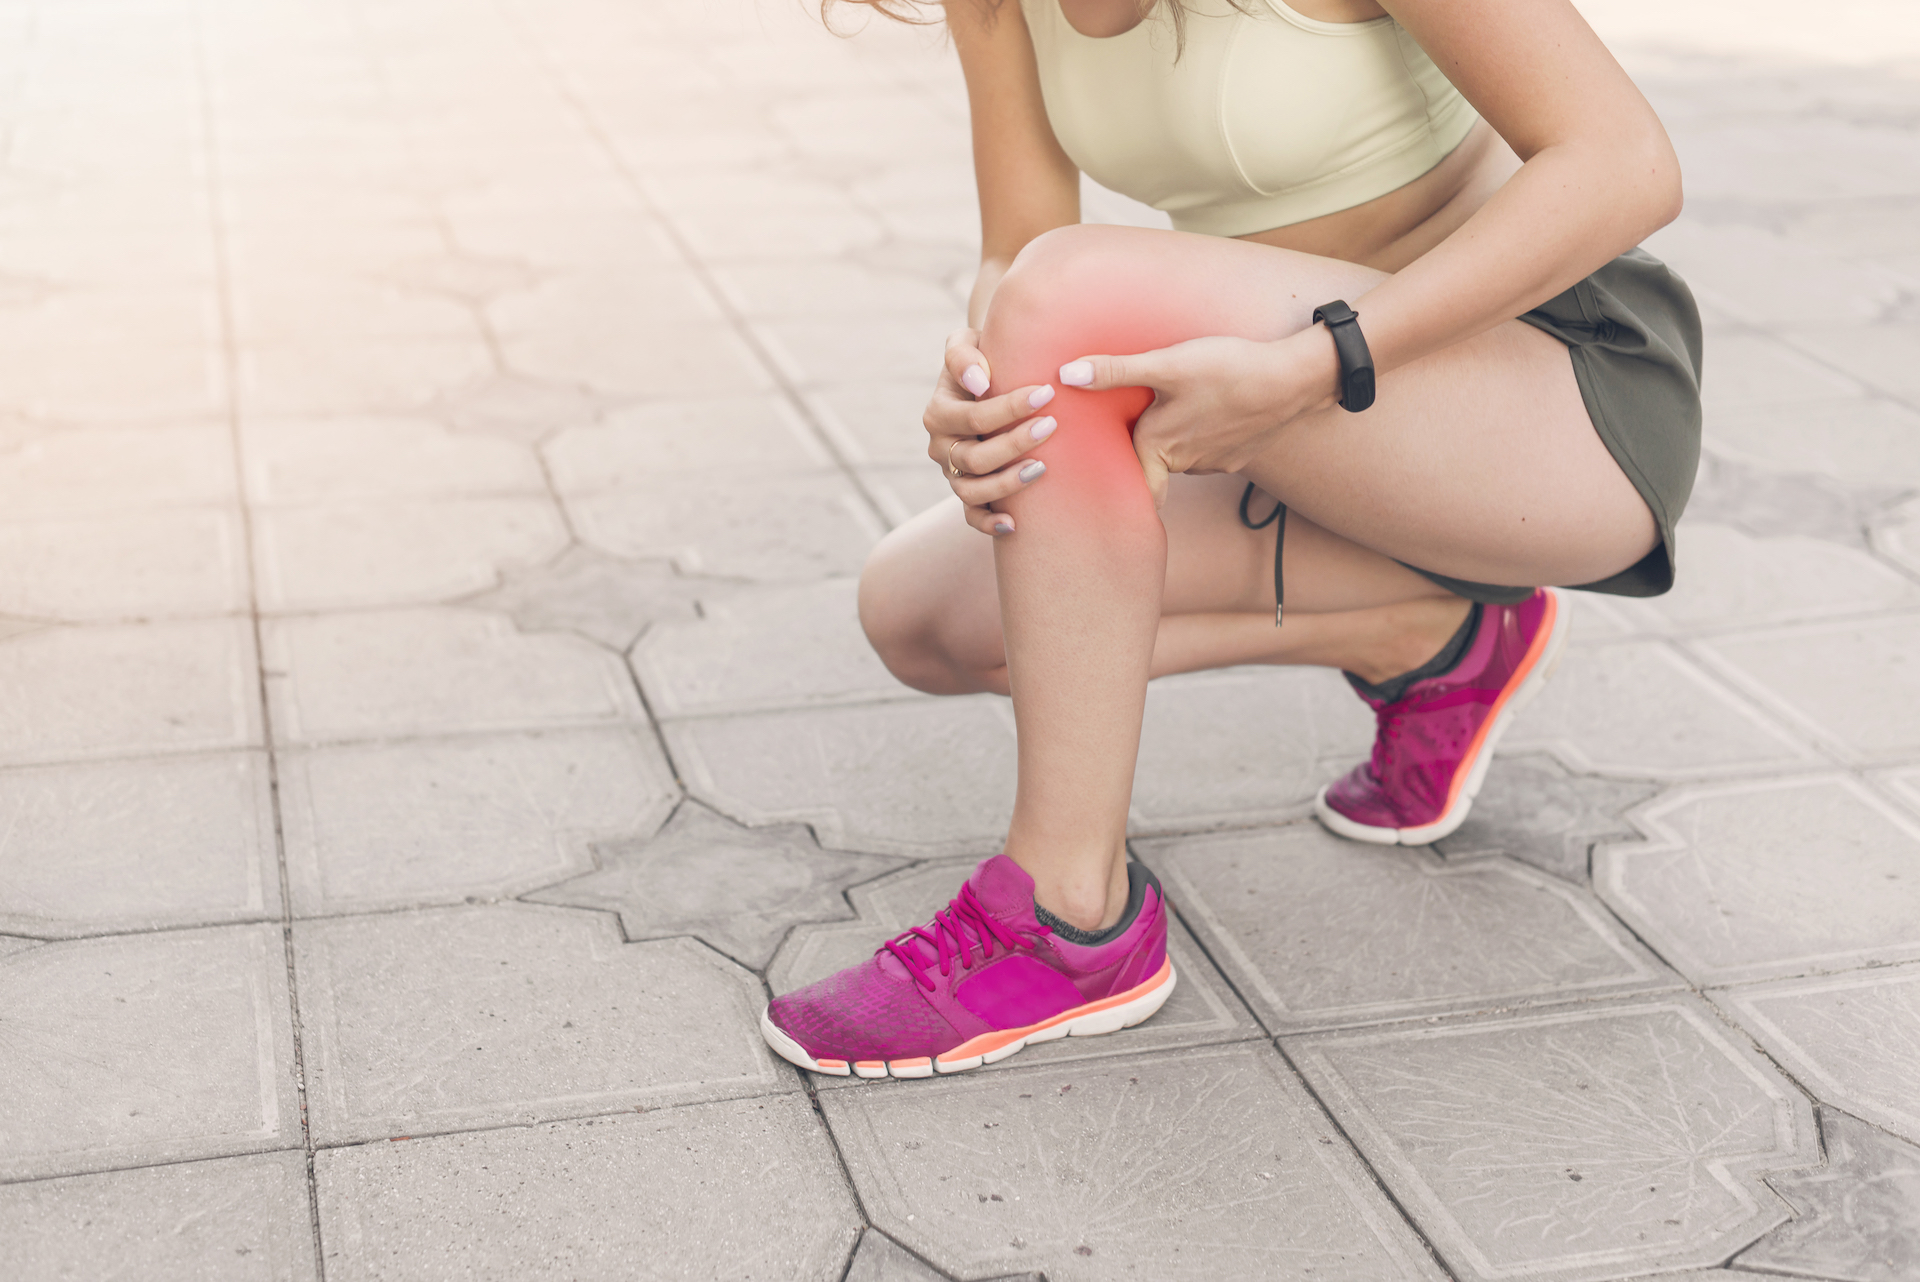 female athlete crouching pavement having pain knee